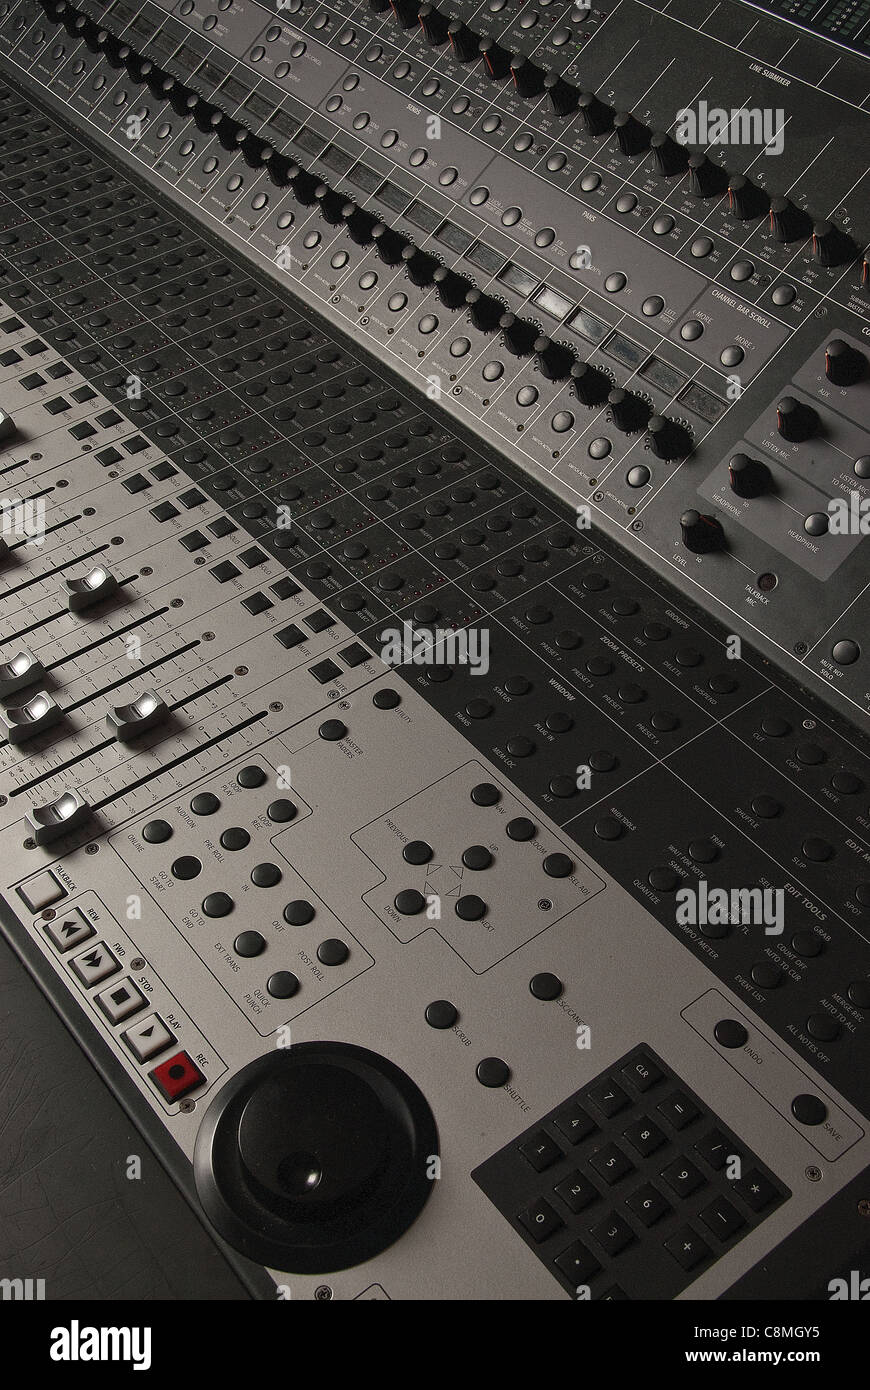 audio mixing desk Stock Photo